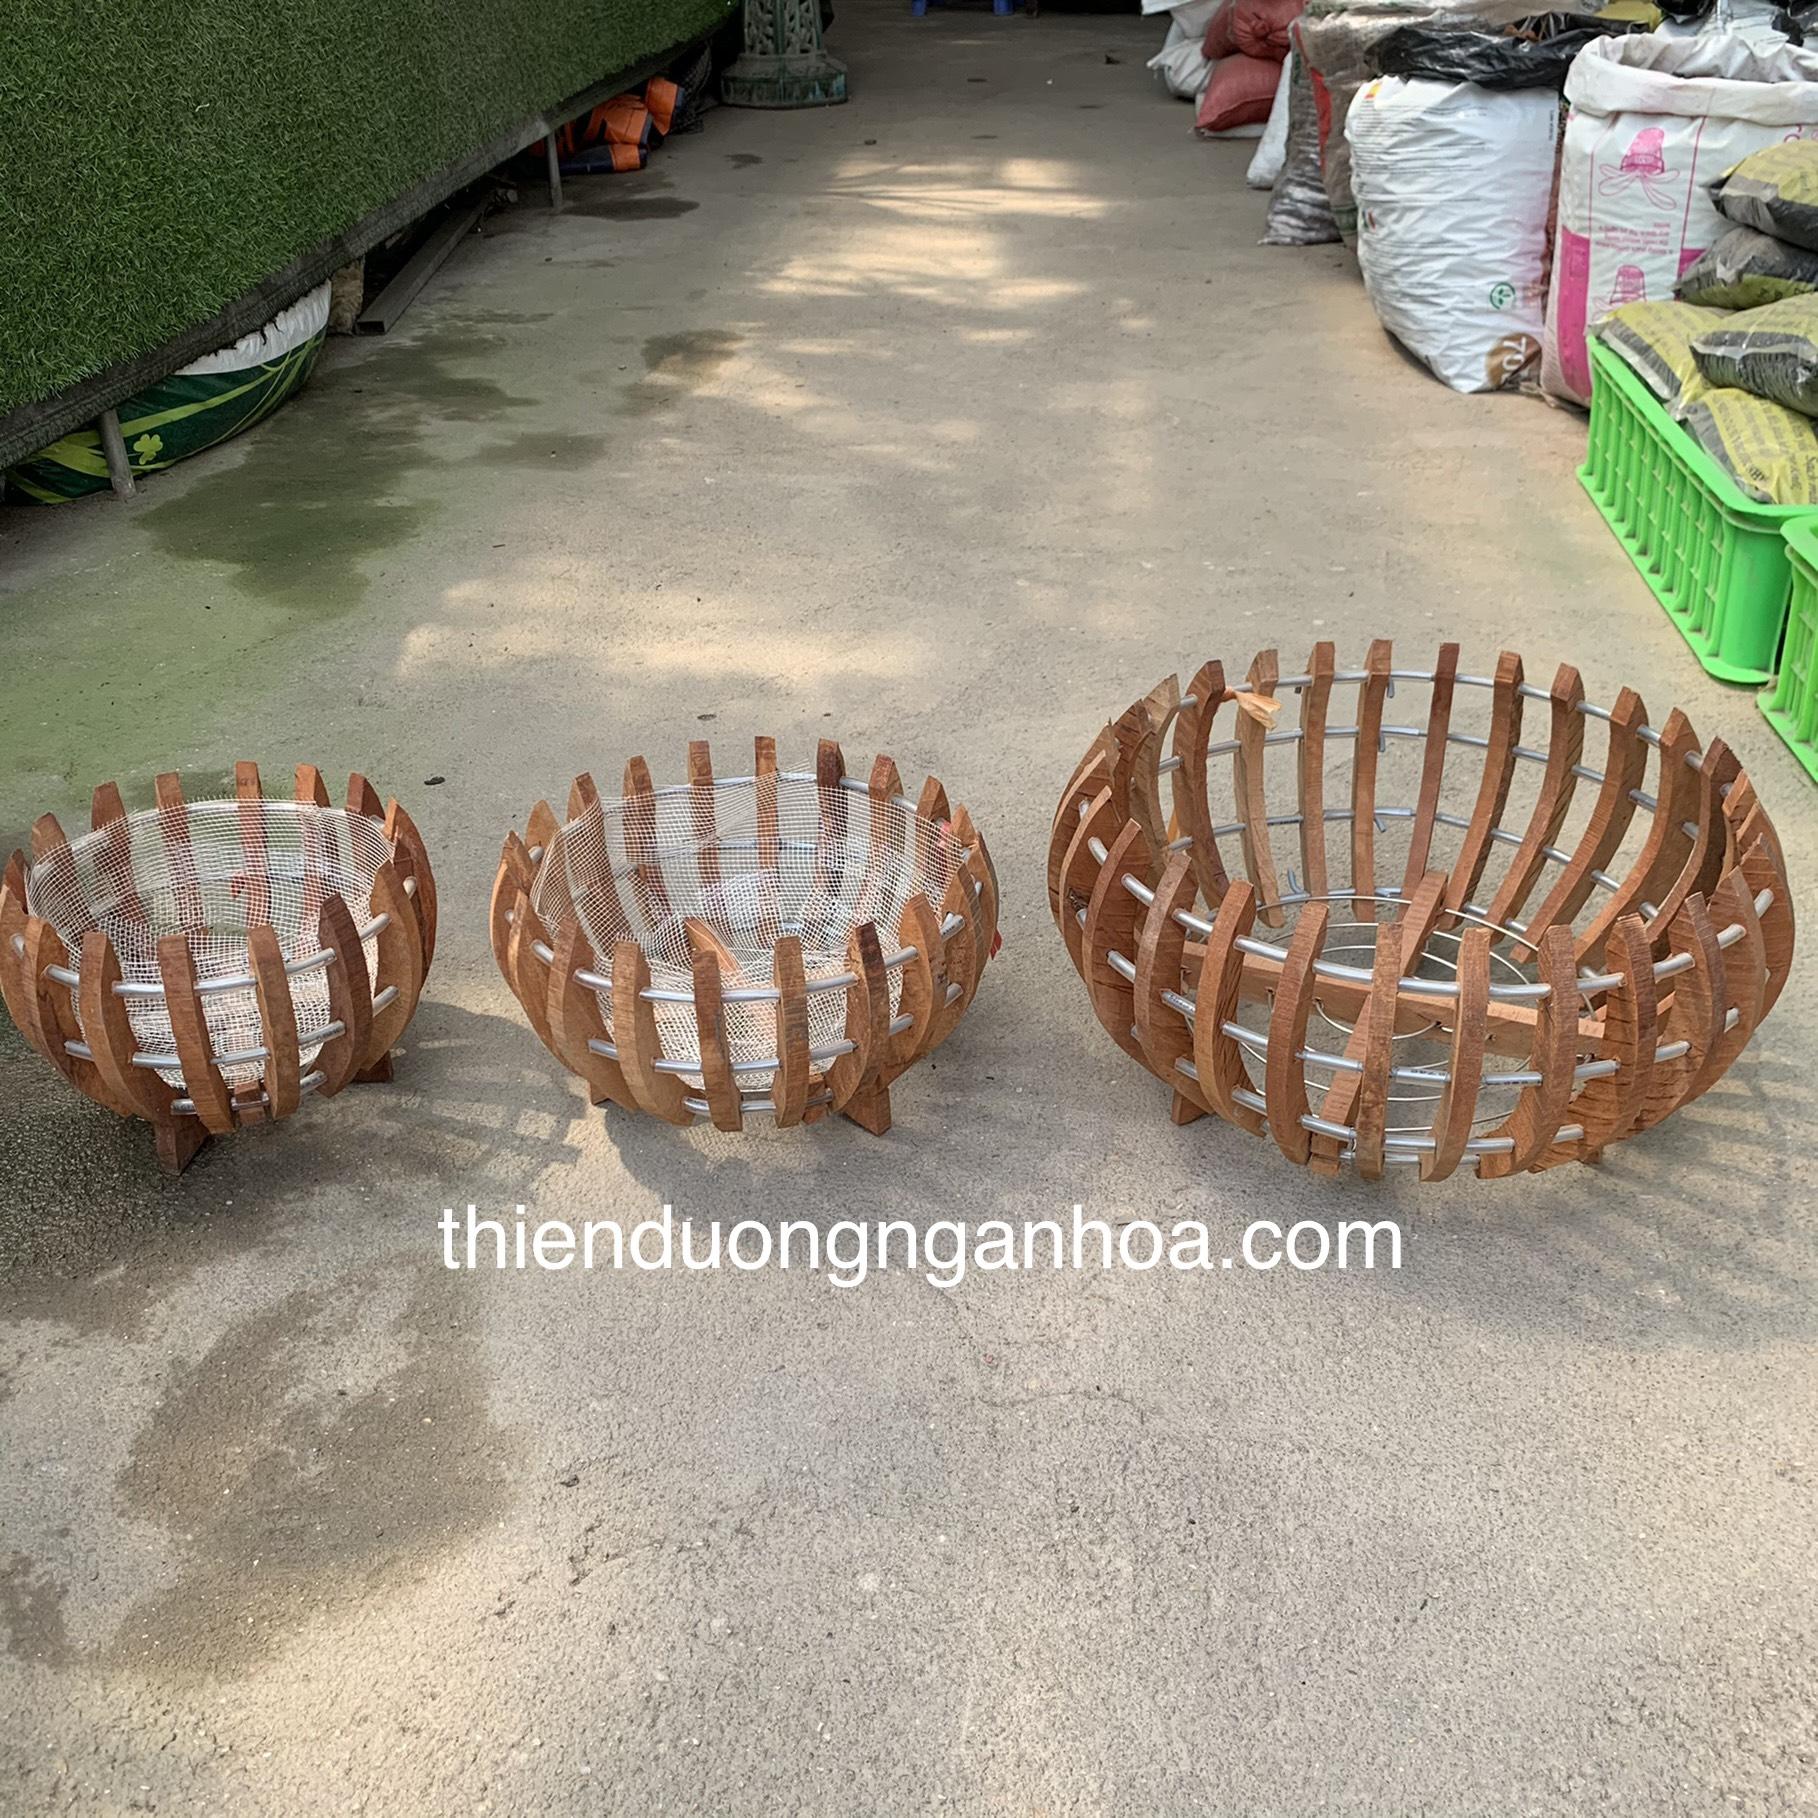 Bán chậu gỗ nhãn bí trồng lan các kích cỡ 20cm, 25cm,30cm, 35cm tại Hà Nội